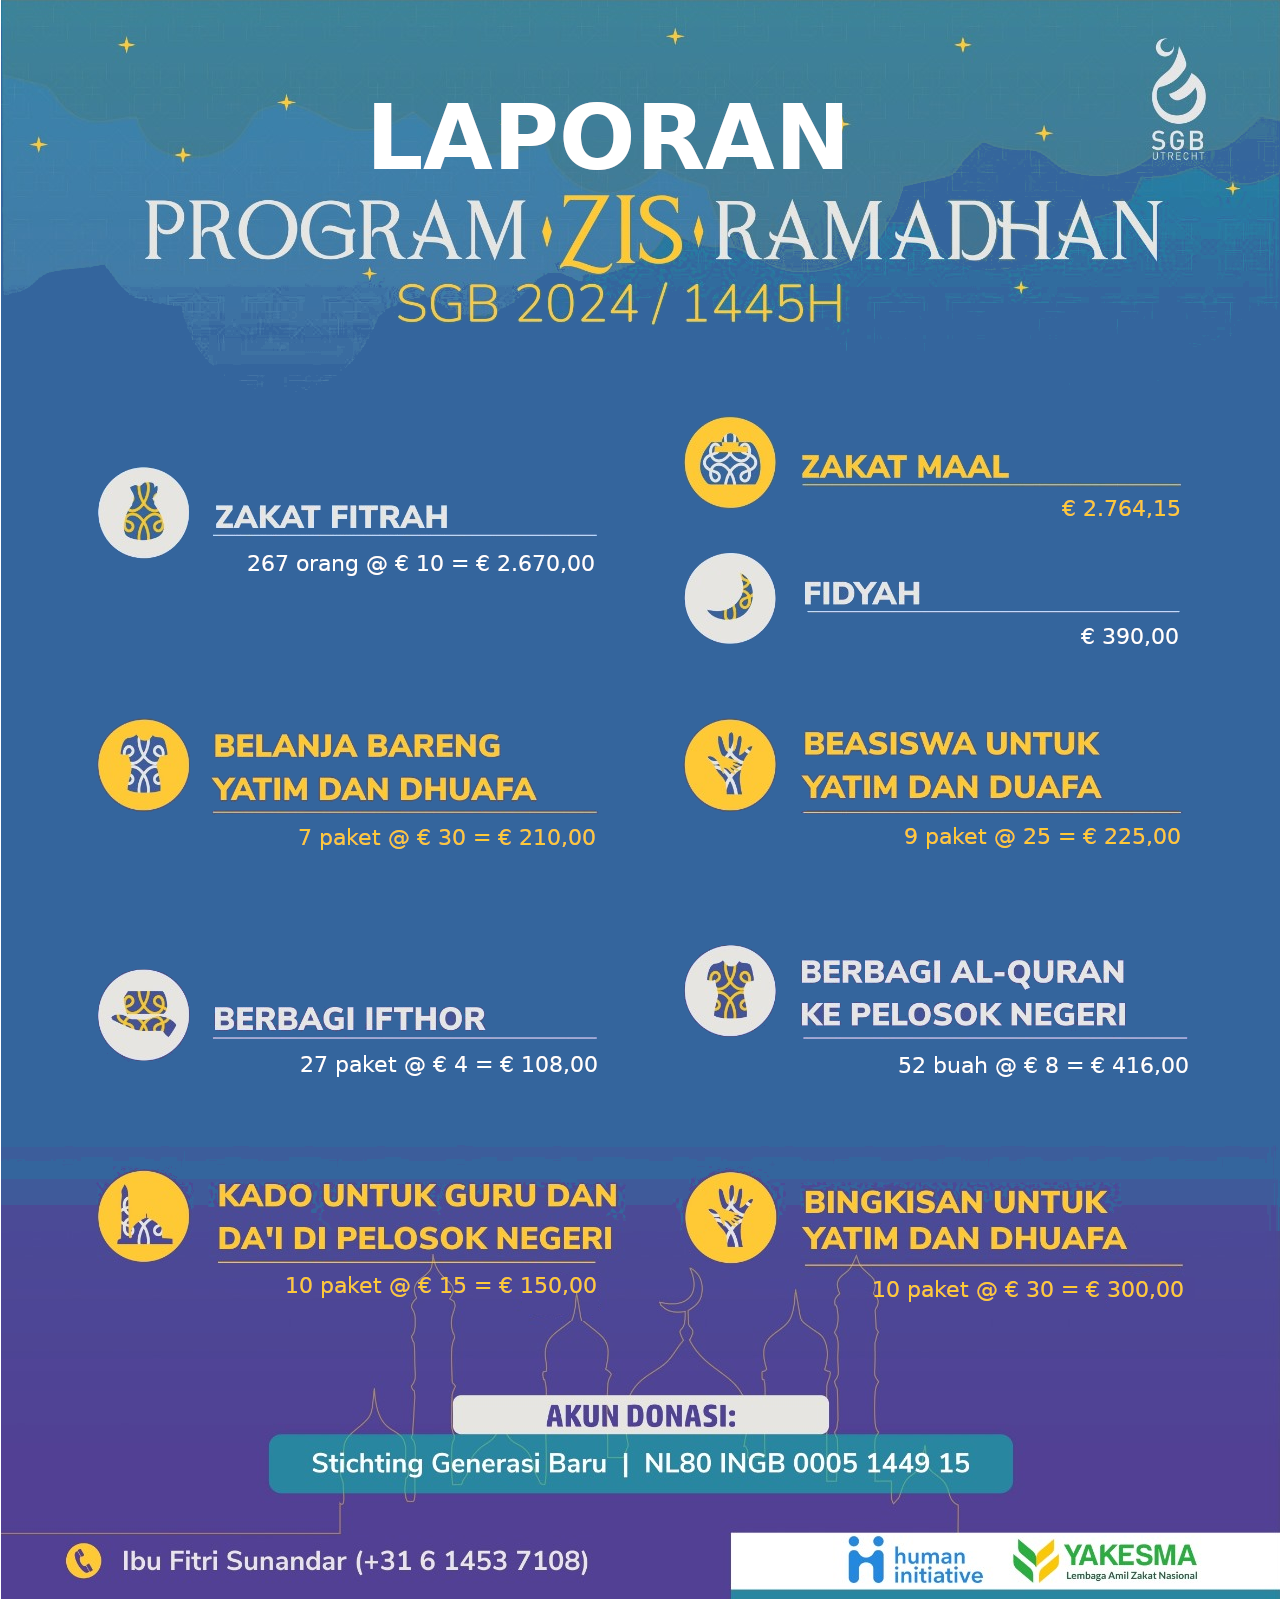 Laporan Program ZIS (Zakat Infaq Shodaqoh) Romadhon 2024 SGB